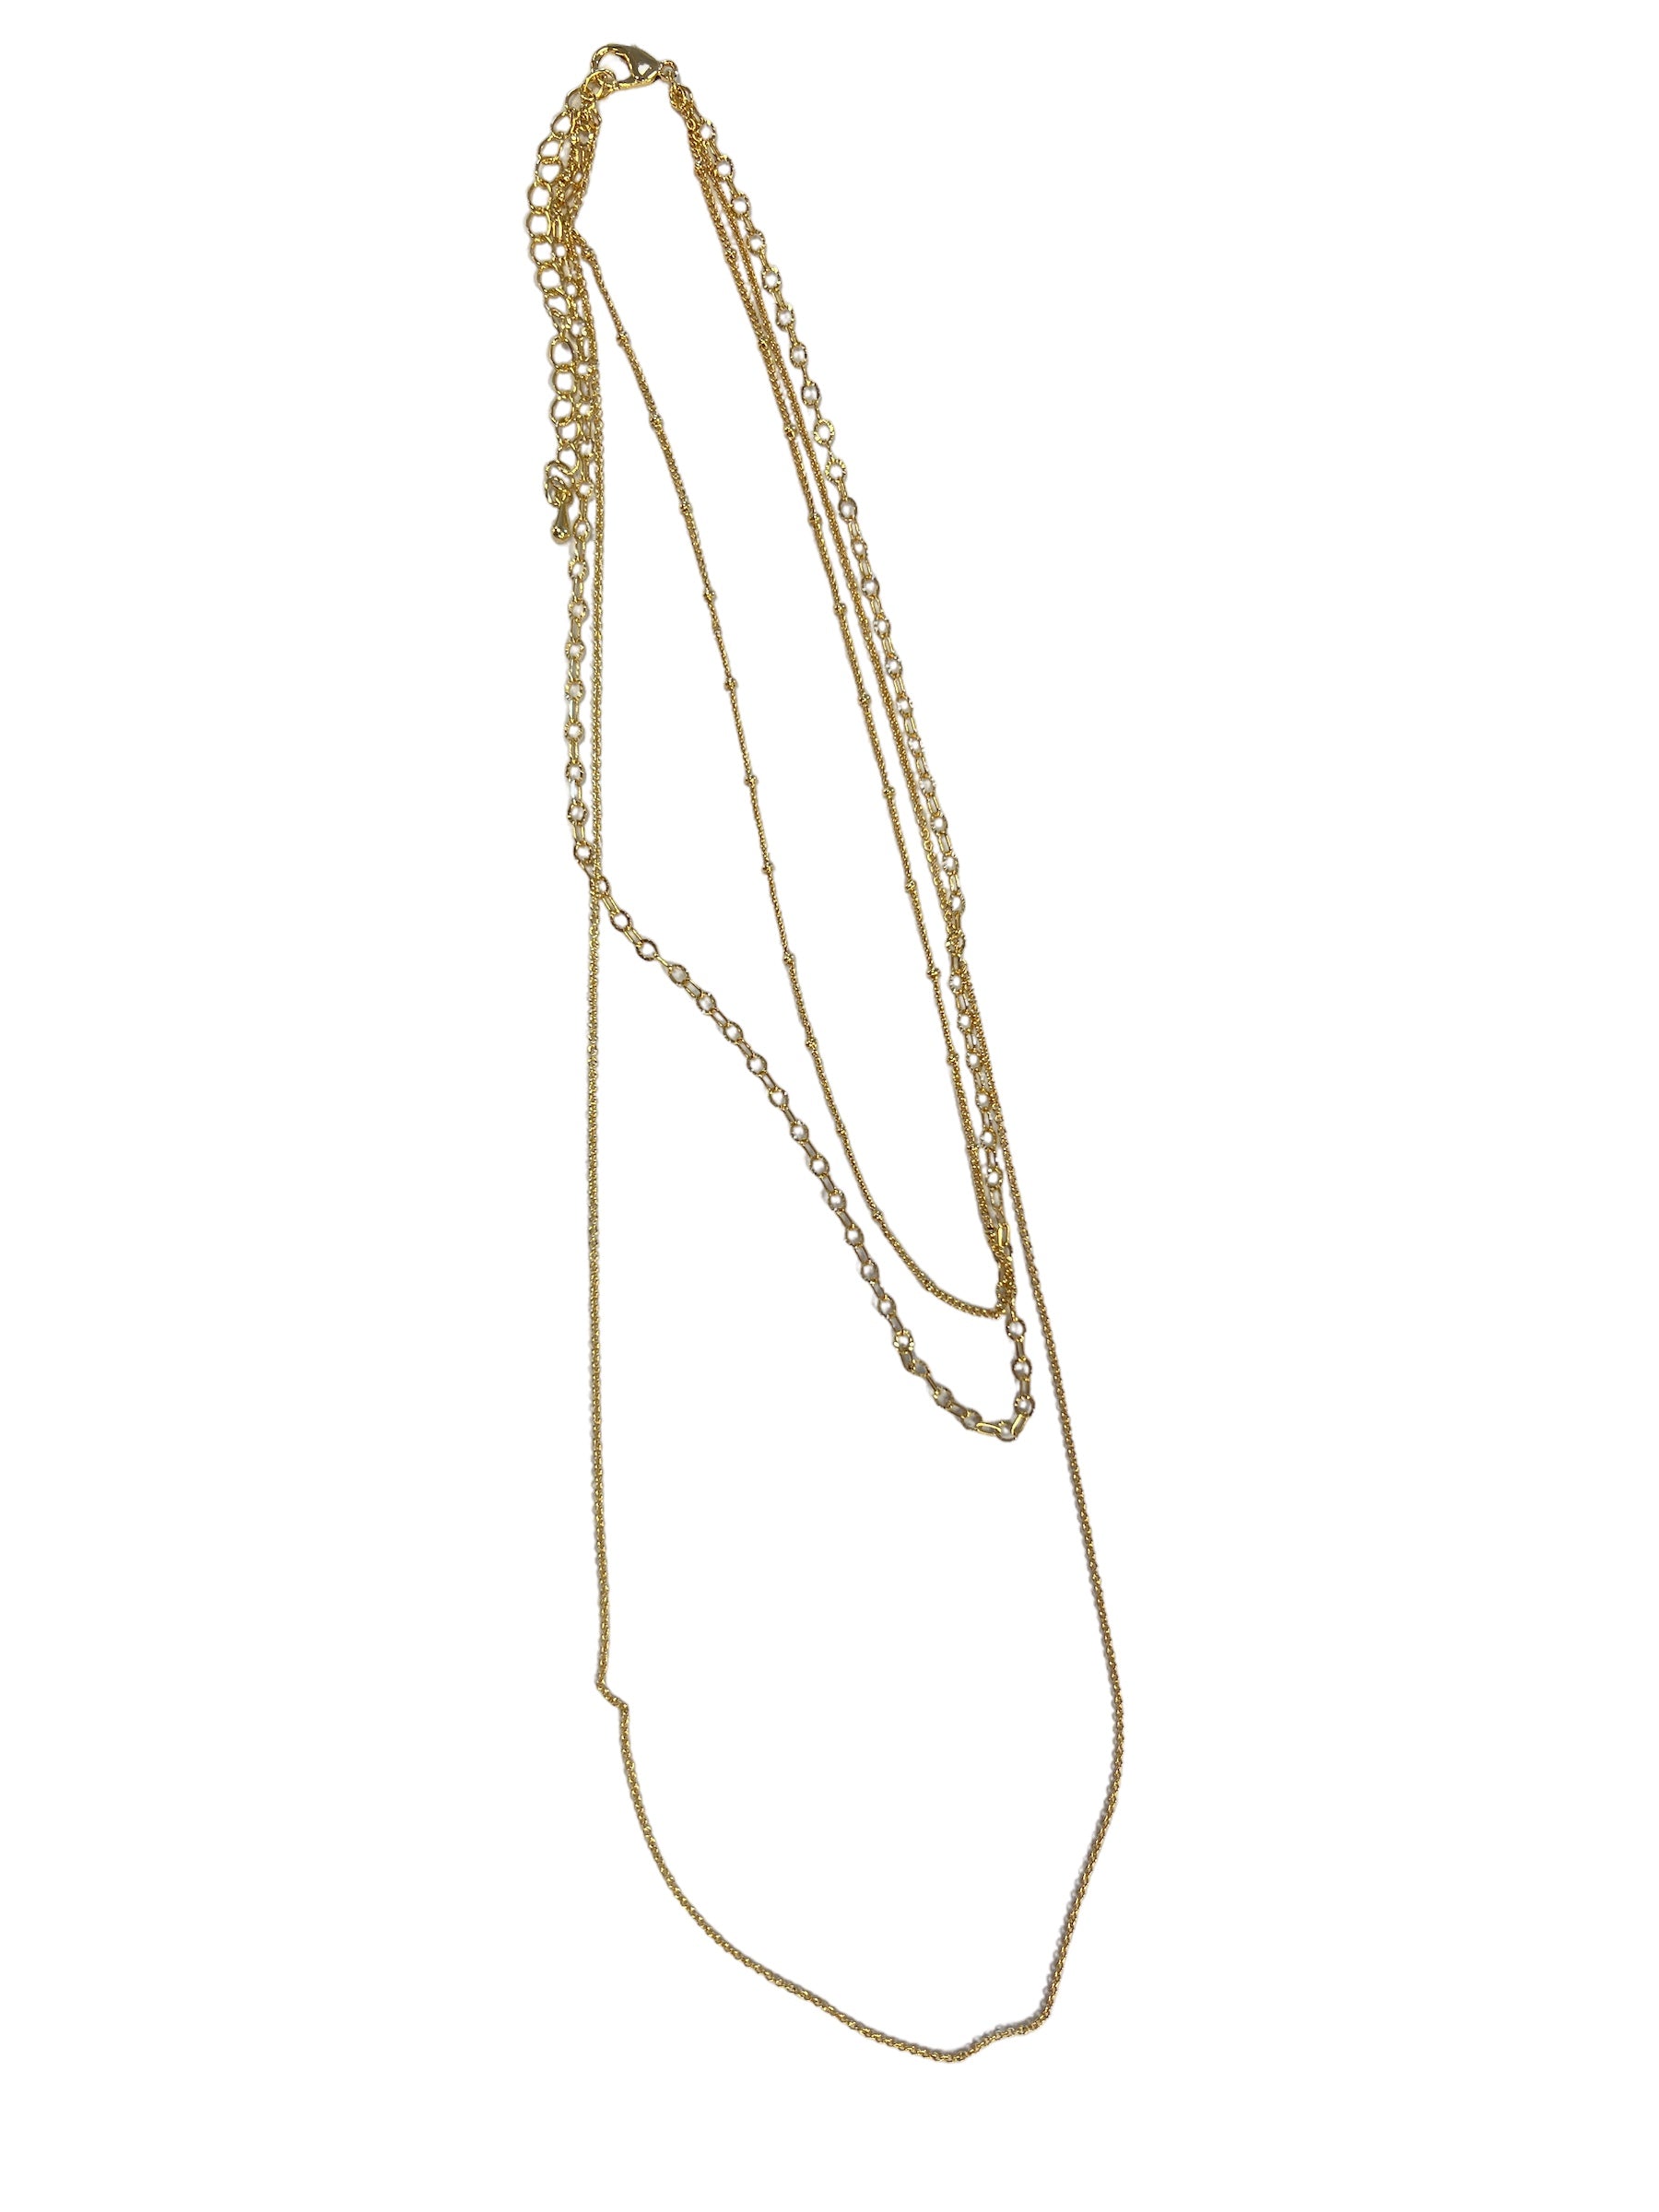 Trixie Necklace-410 Jewelry-Simply Stylish Boutique-Simply Stylish Boutique | Women’s & Kid’s Fashion | Paducah, KY